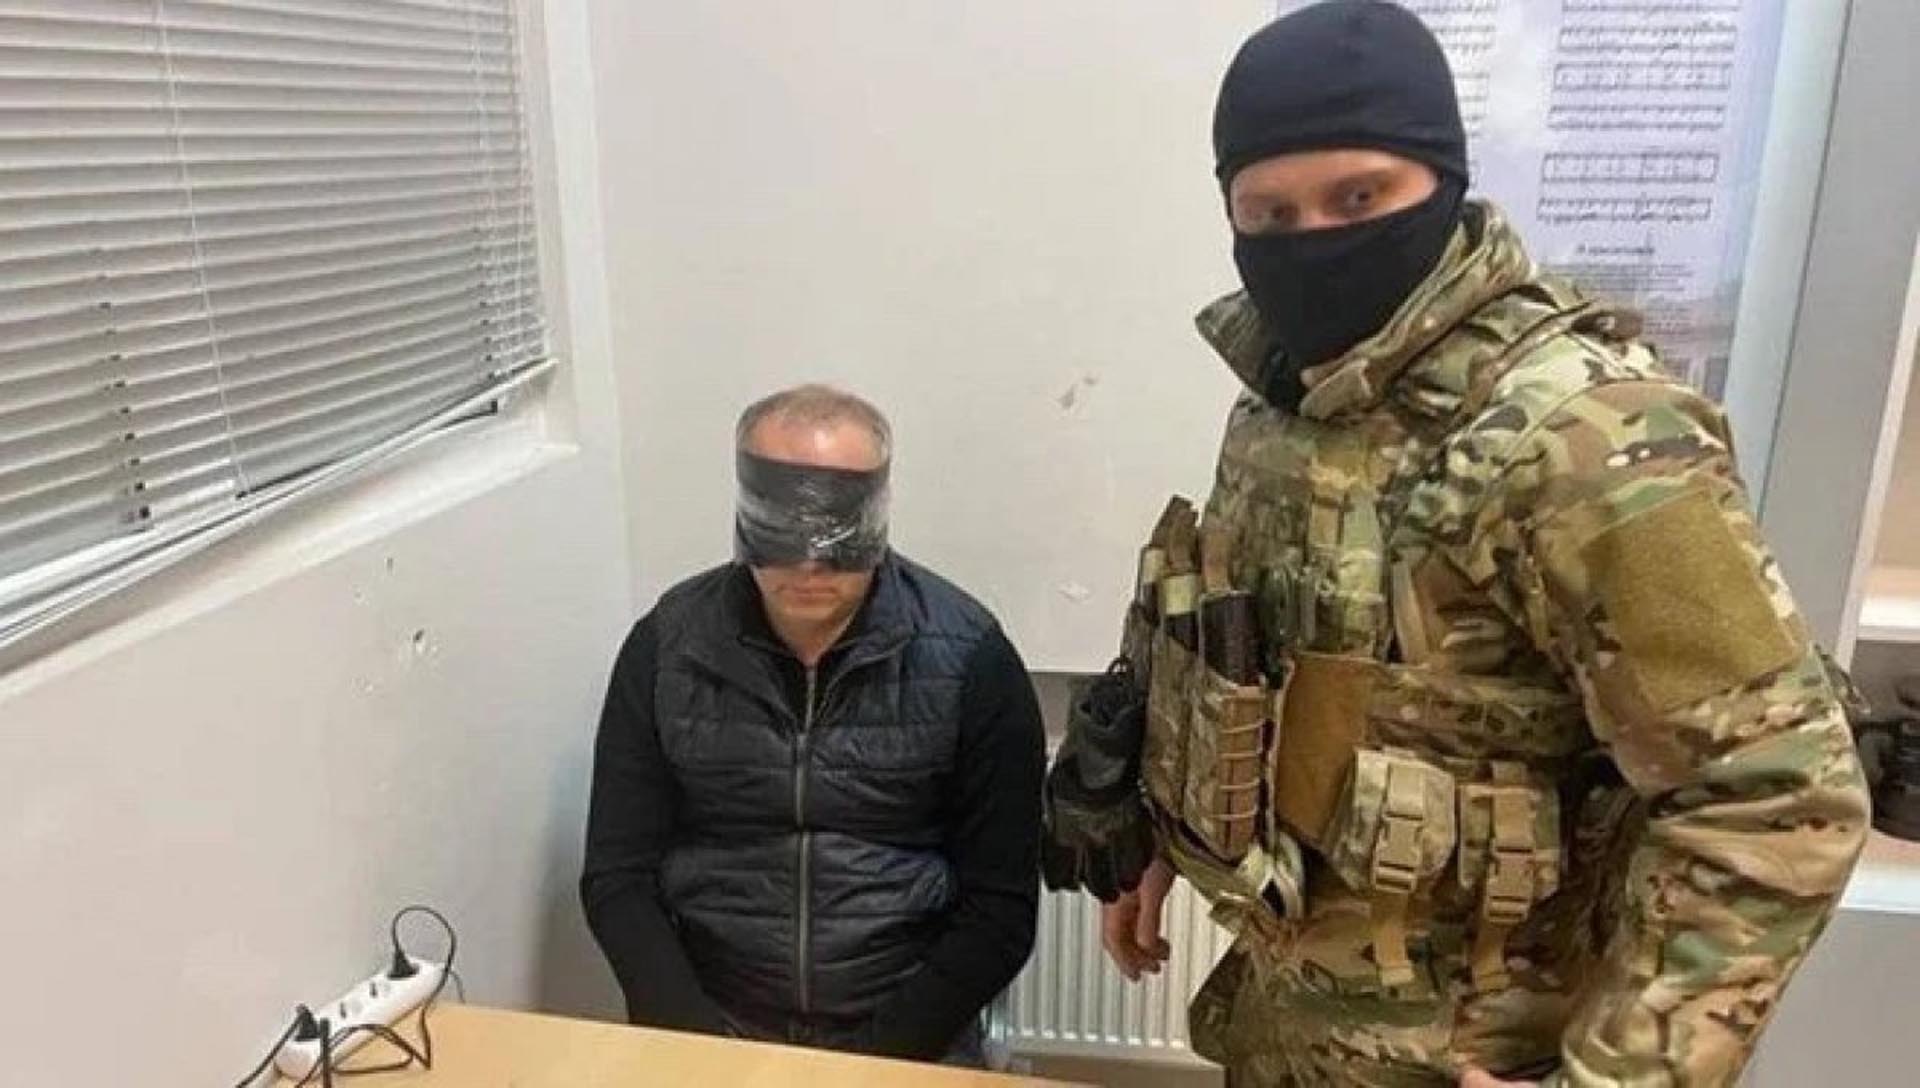 Ukraynalı müzakereci Denis Kireyev infaz edildi! Belarus görüşmesine Rus ajanı olarak mı katıldı? Şok eden detaylar!